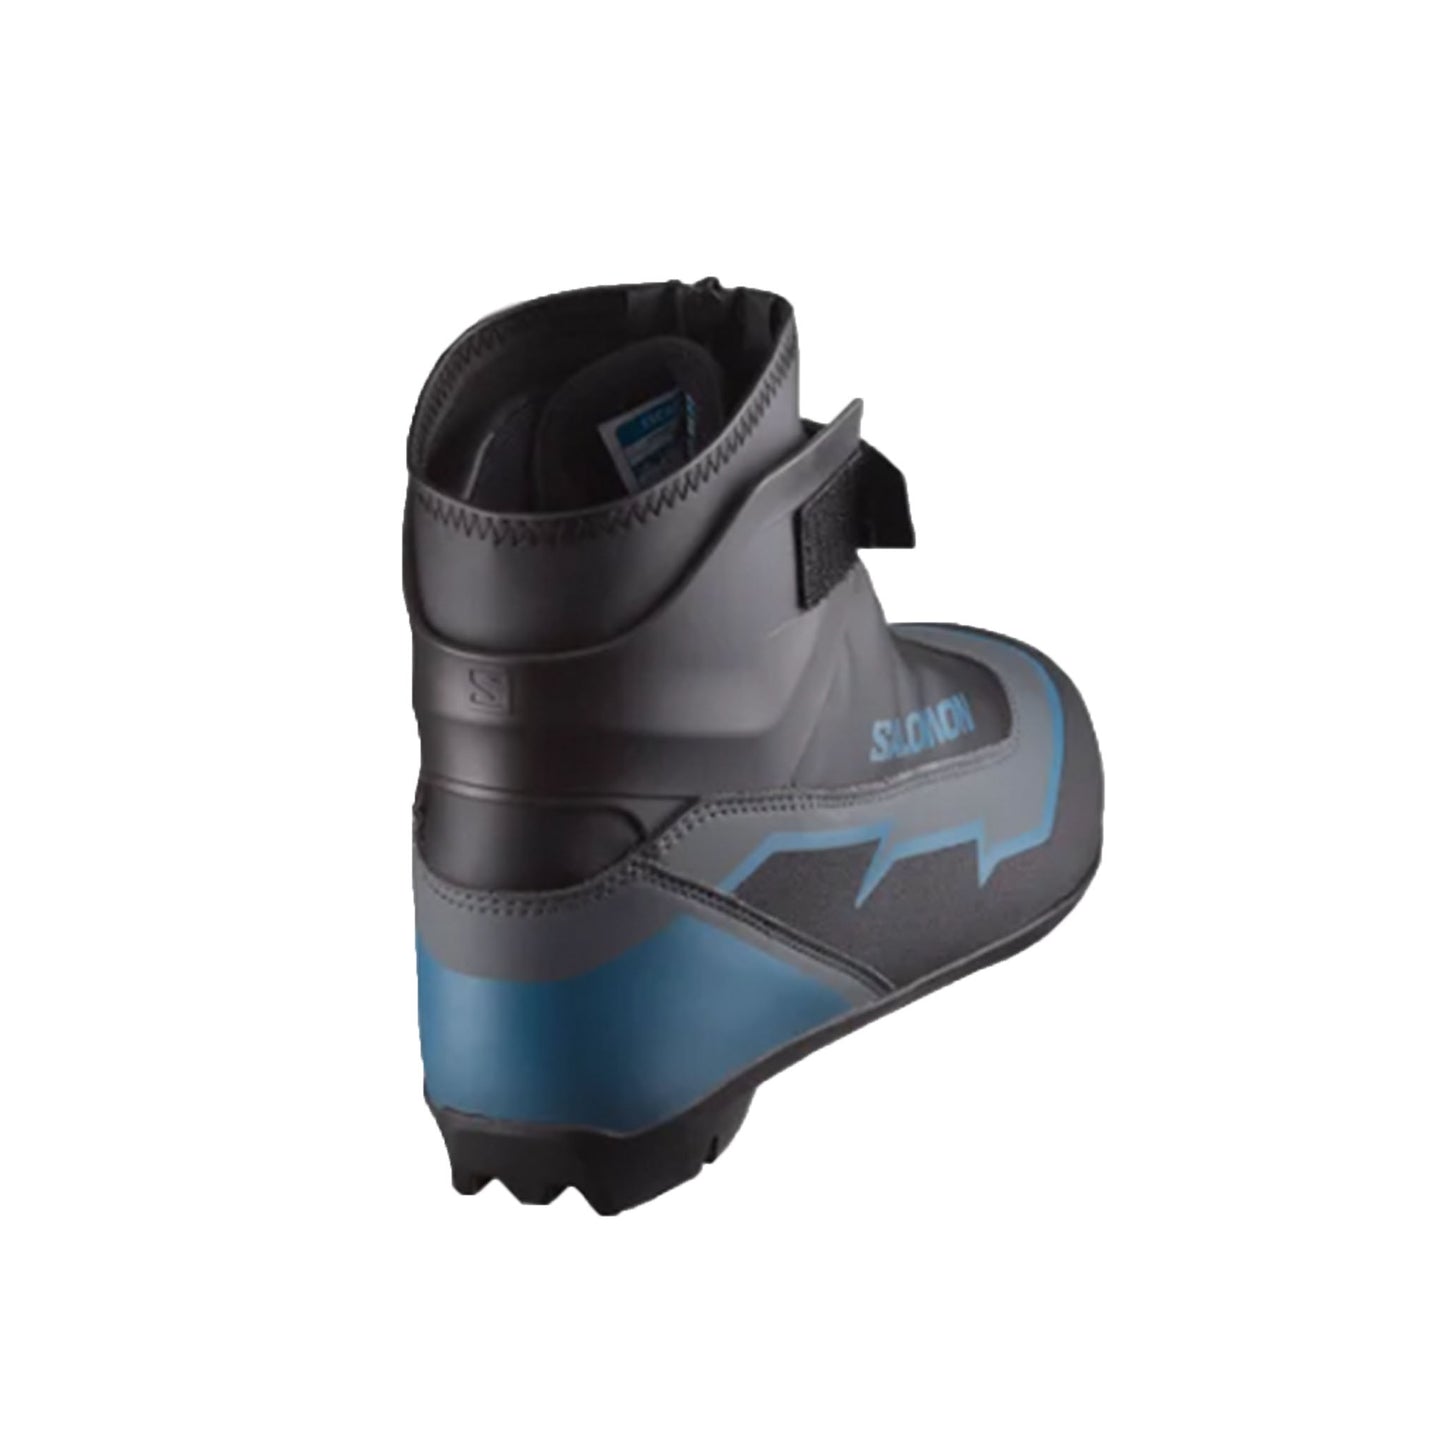 Salomon Escape Plus Nordic Ski Boots